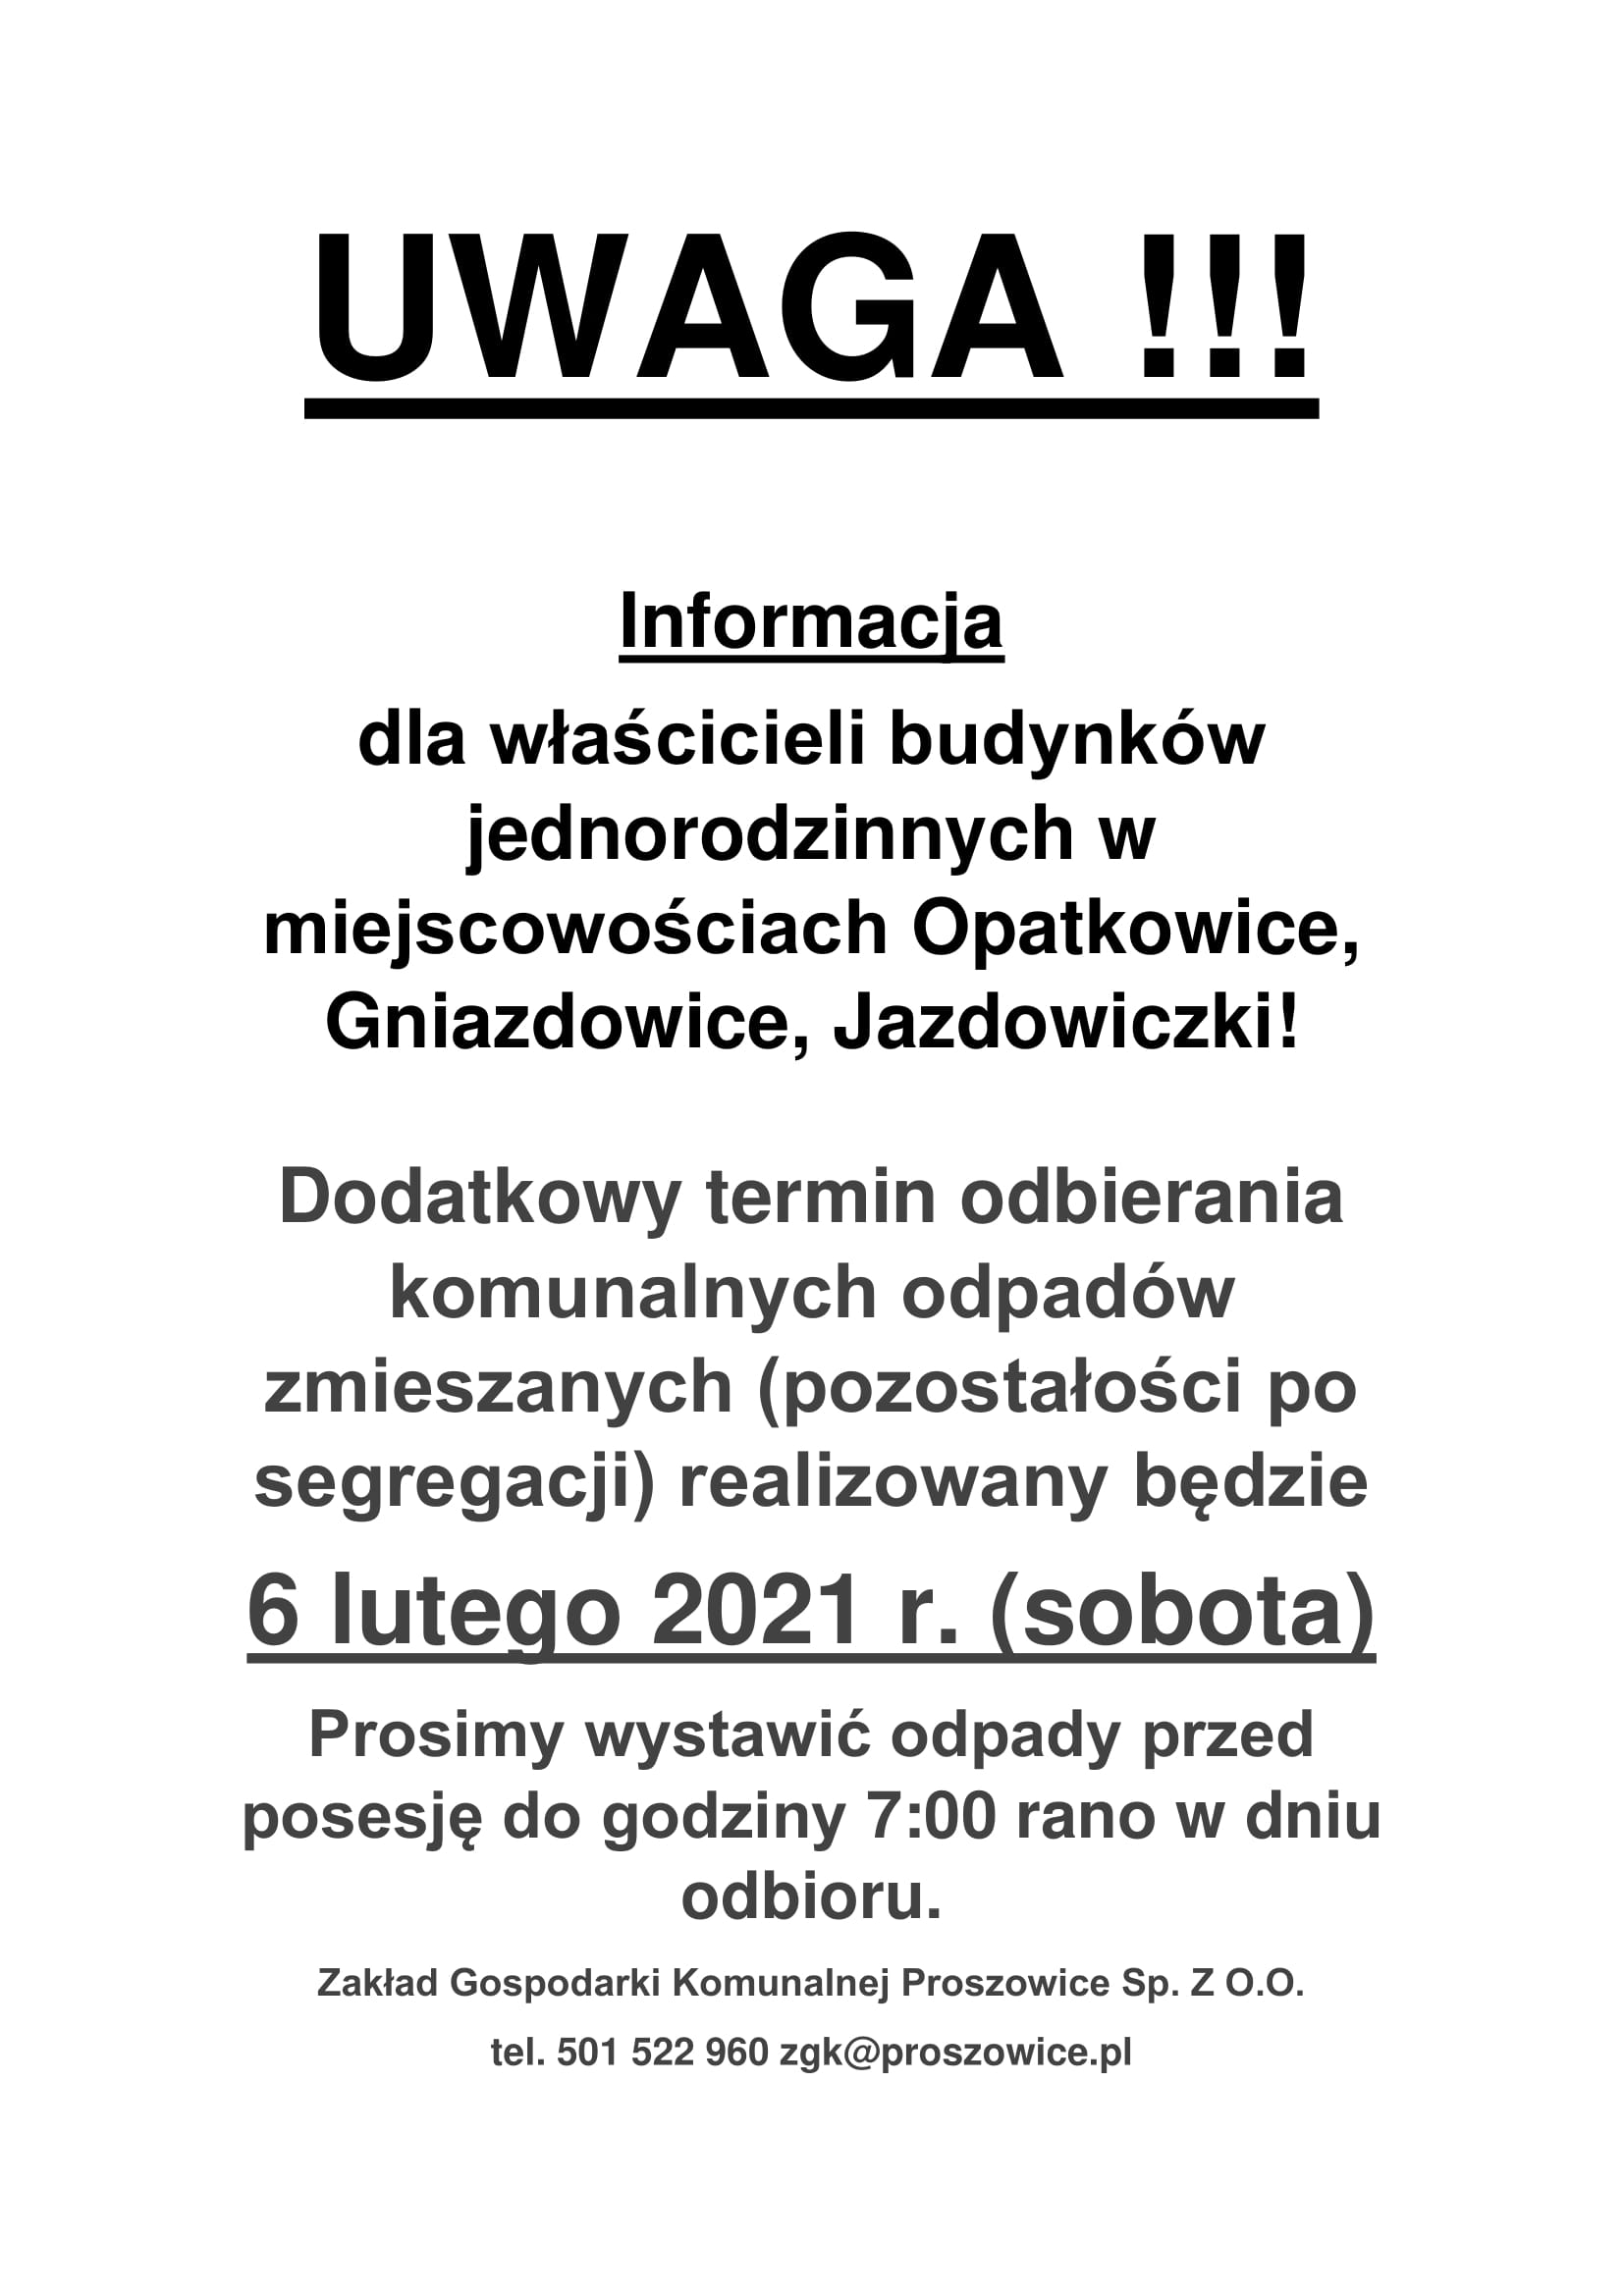 Informacja dla właścicieli budynków jednorodzinnych w miejscowościach Opatkowice, Gniazdowice, Jazdowiczki!